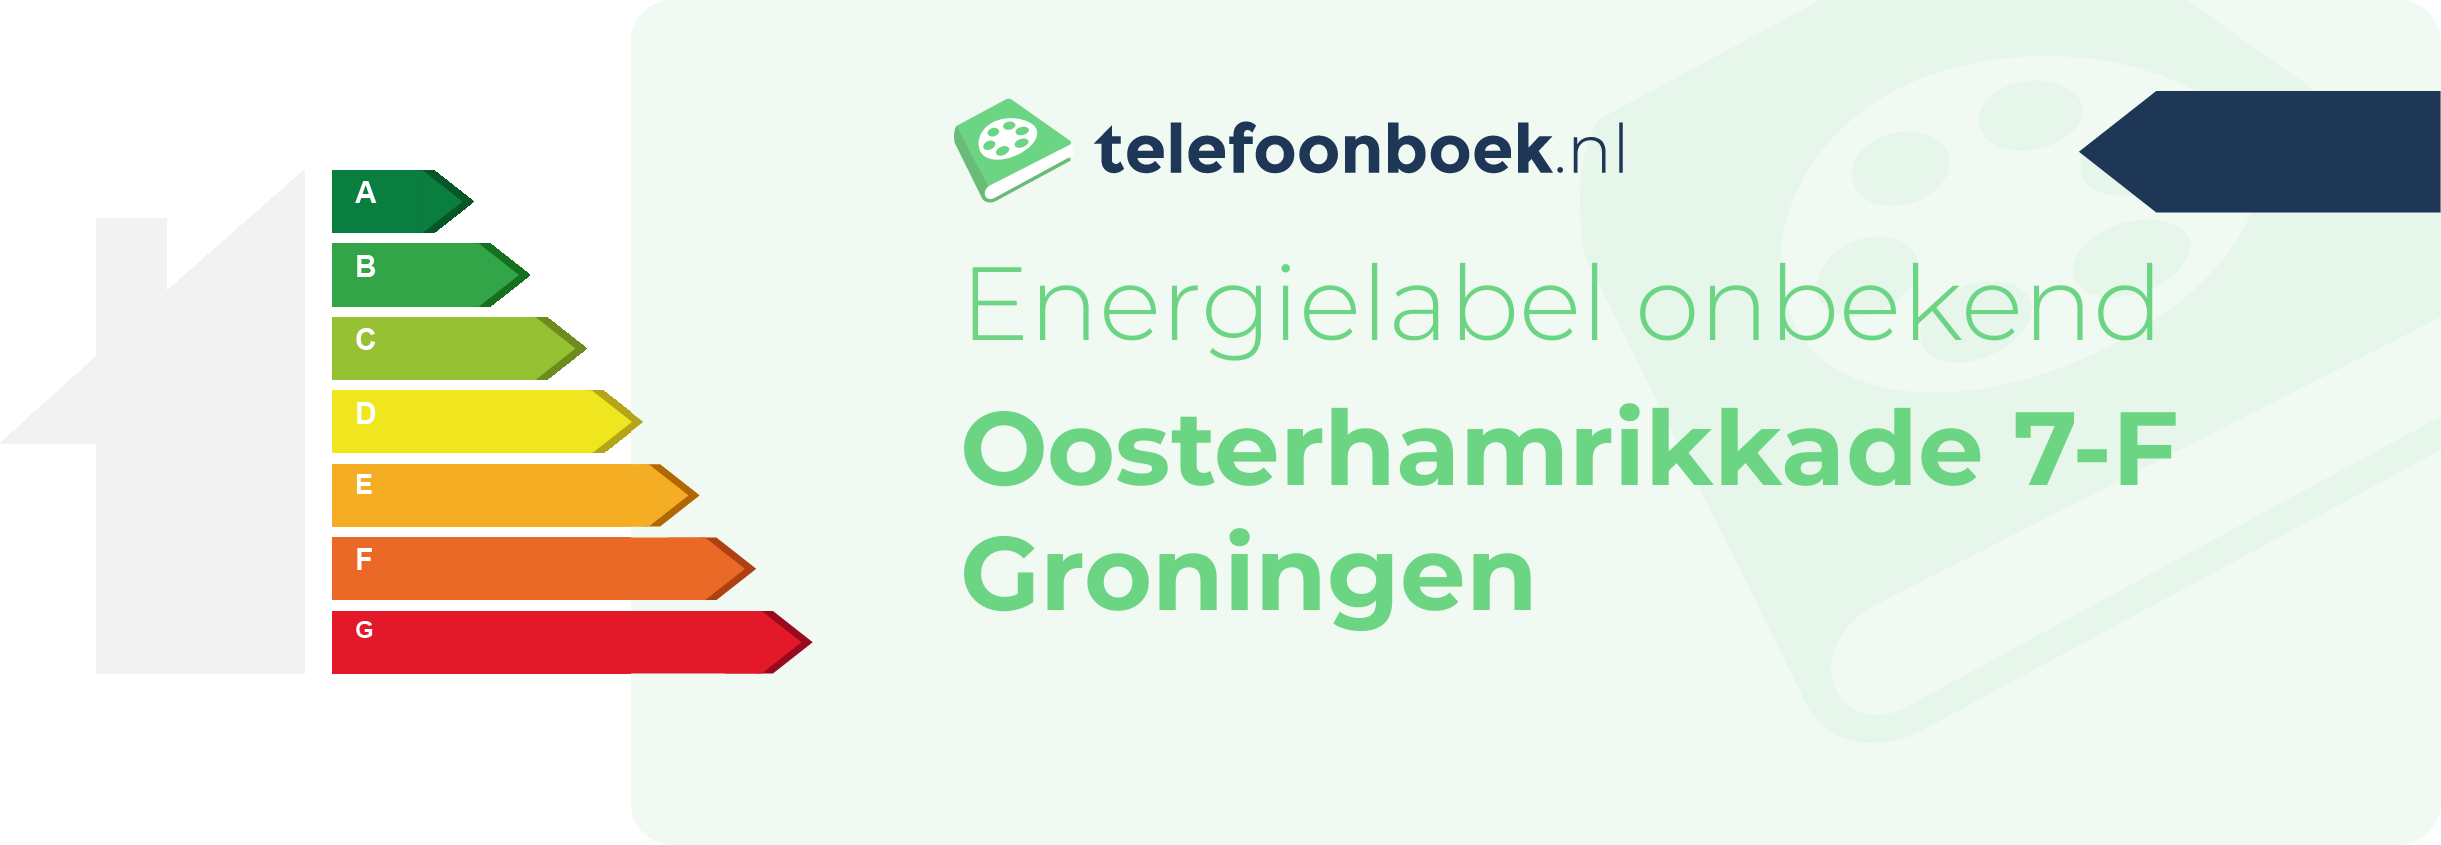 Energielabel Oosterhamrikkade 7-F Groningen